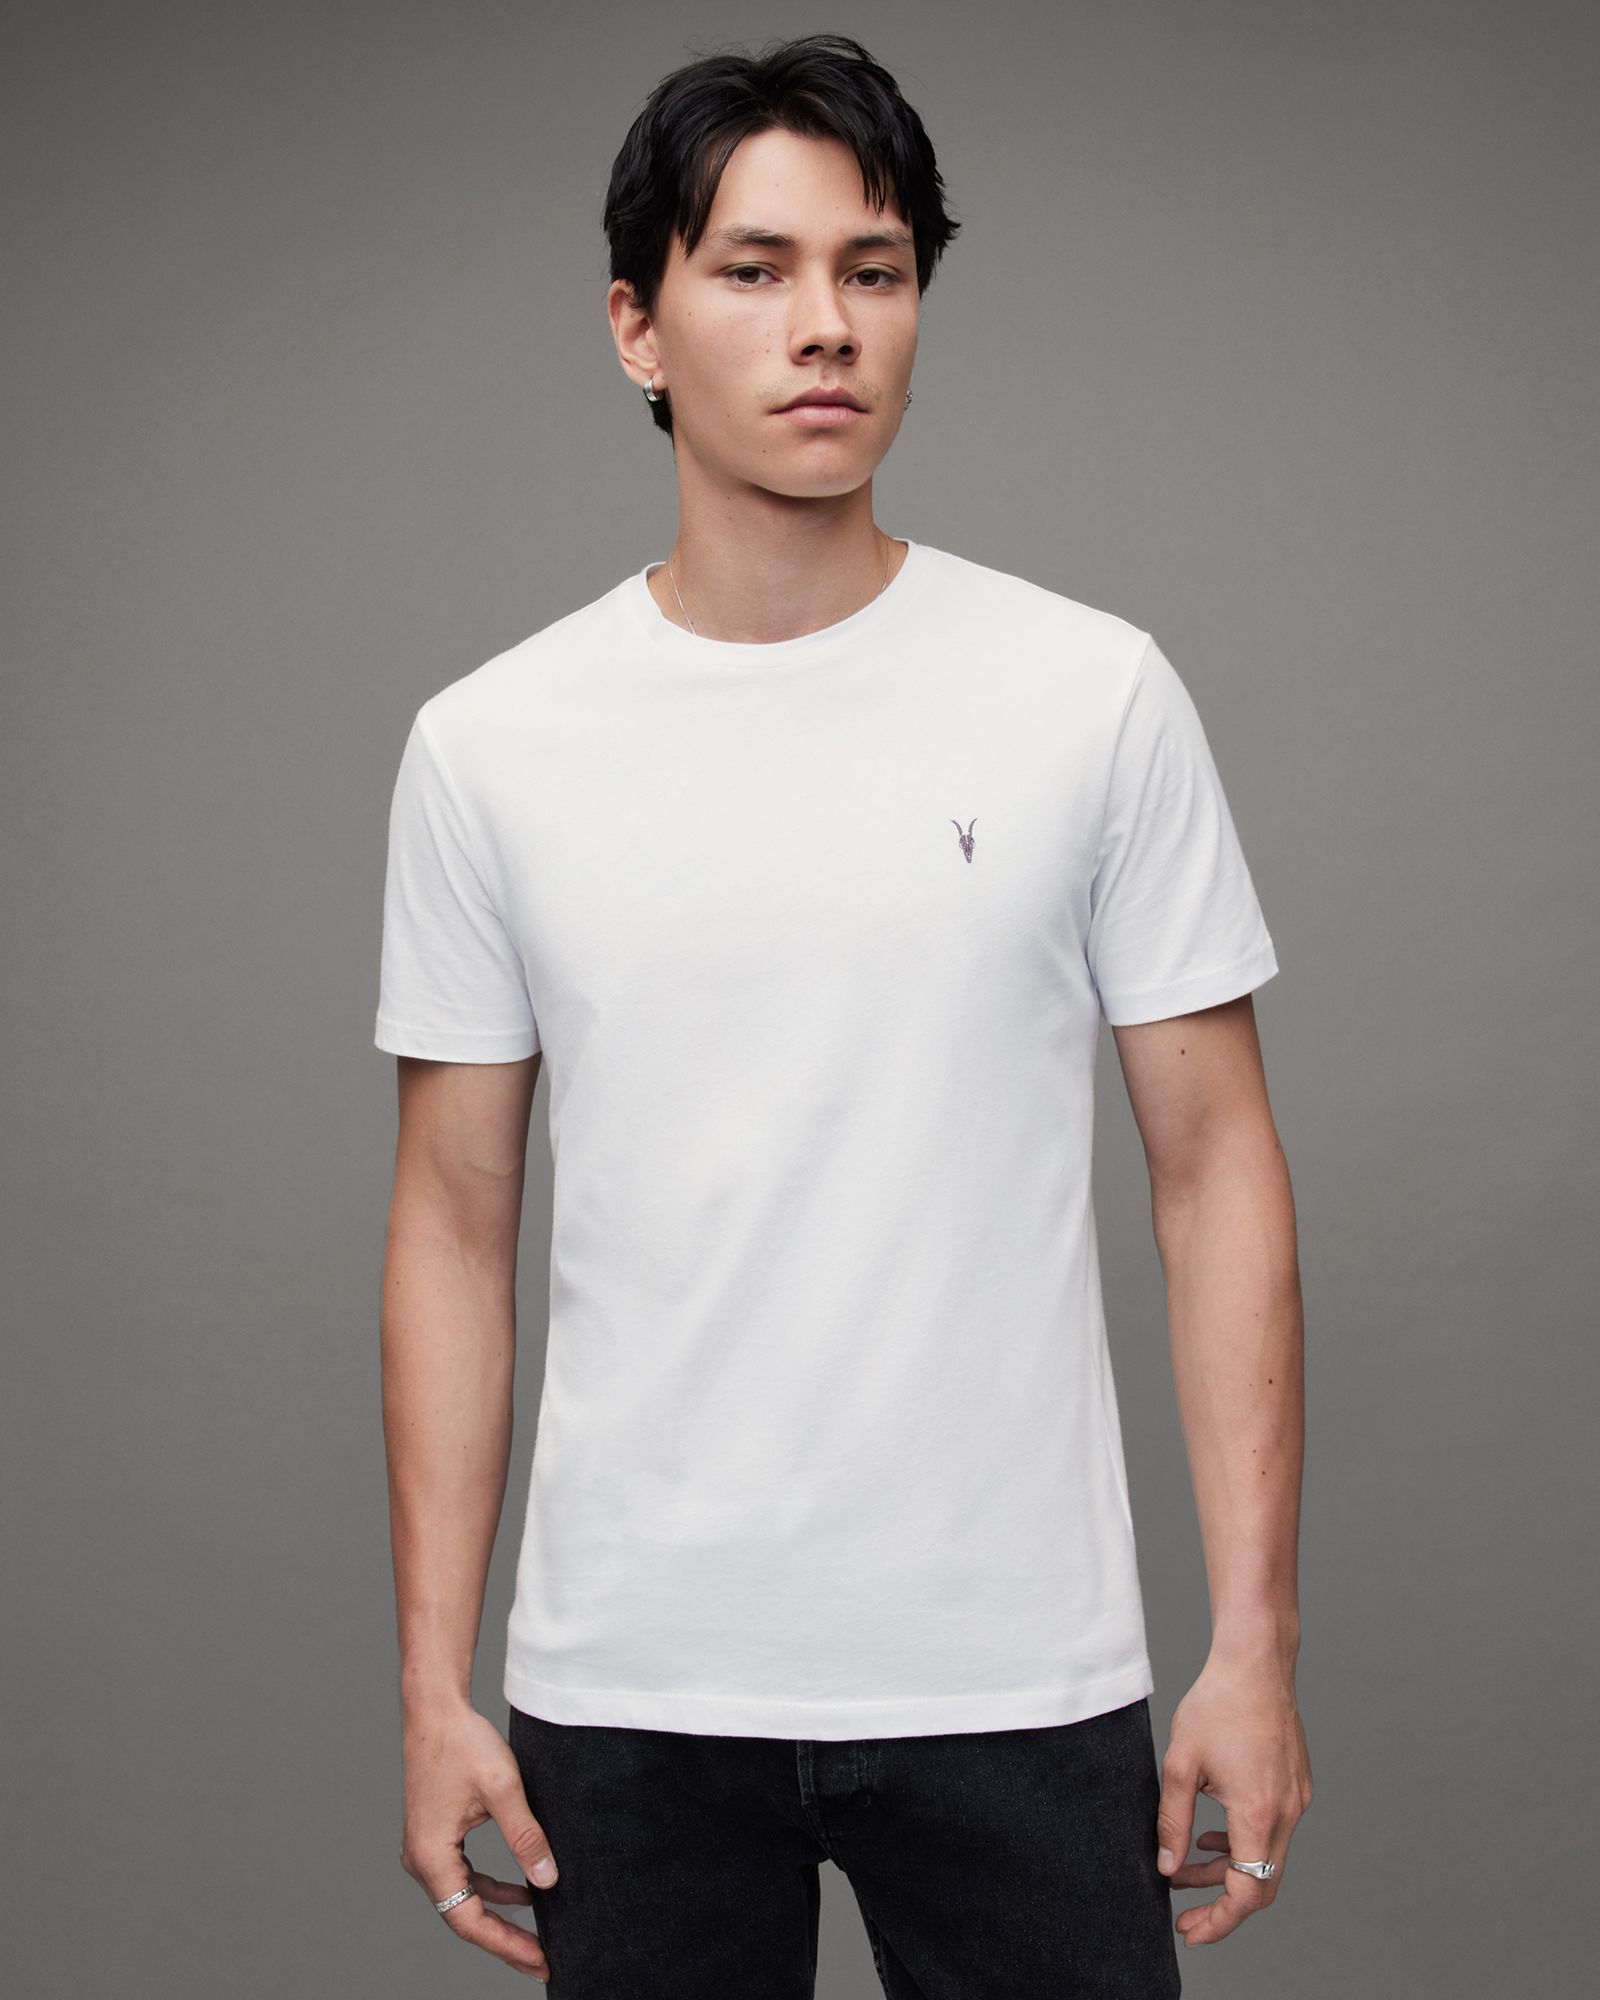 Brace Crew Brushed Cotton T-Shirt | AllSaints US